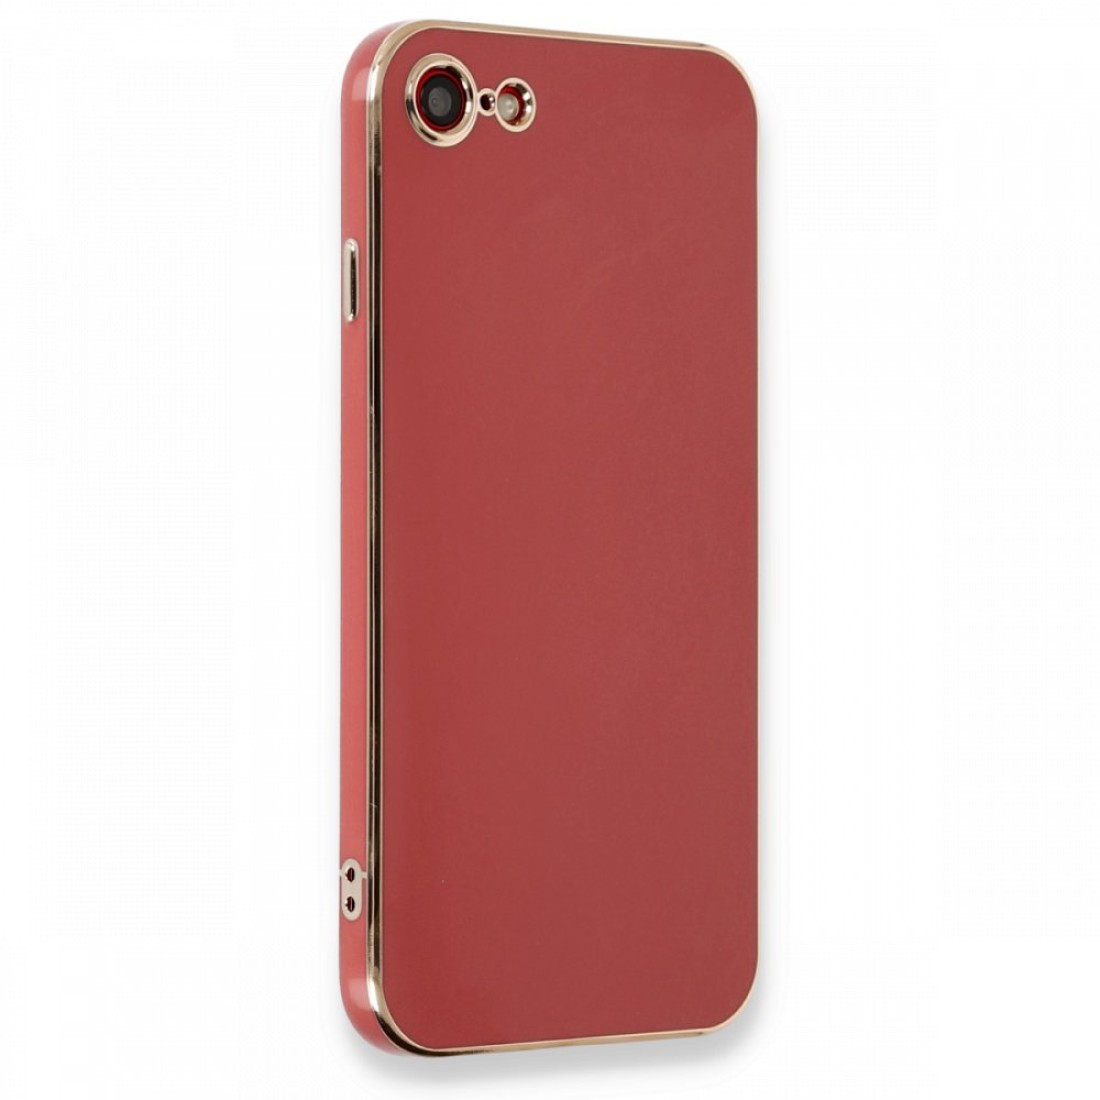 Apple iPhone 7 Kılıf Volet Silikon - Kırmızı